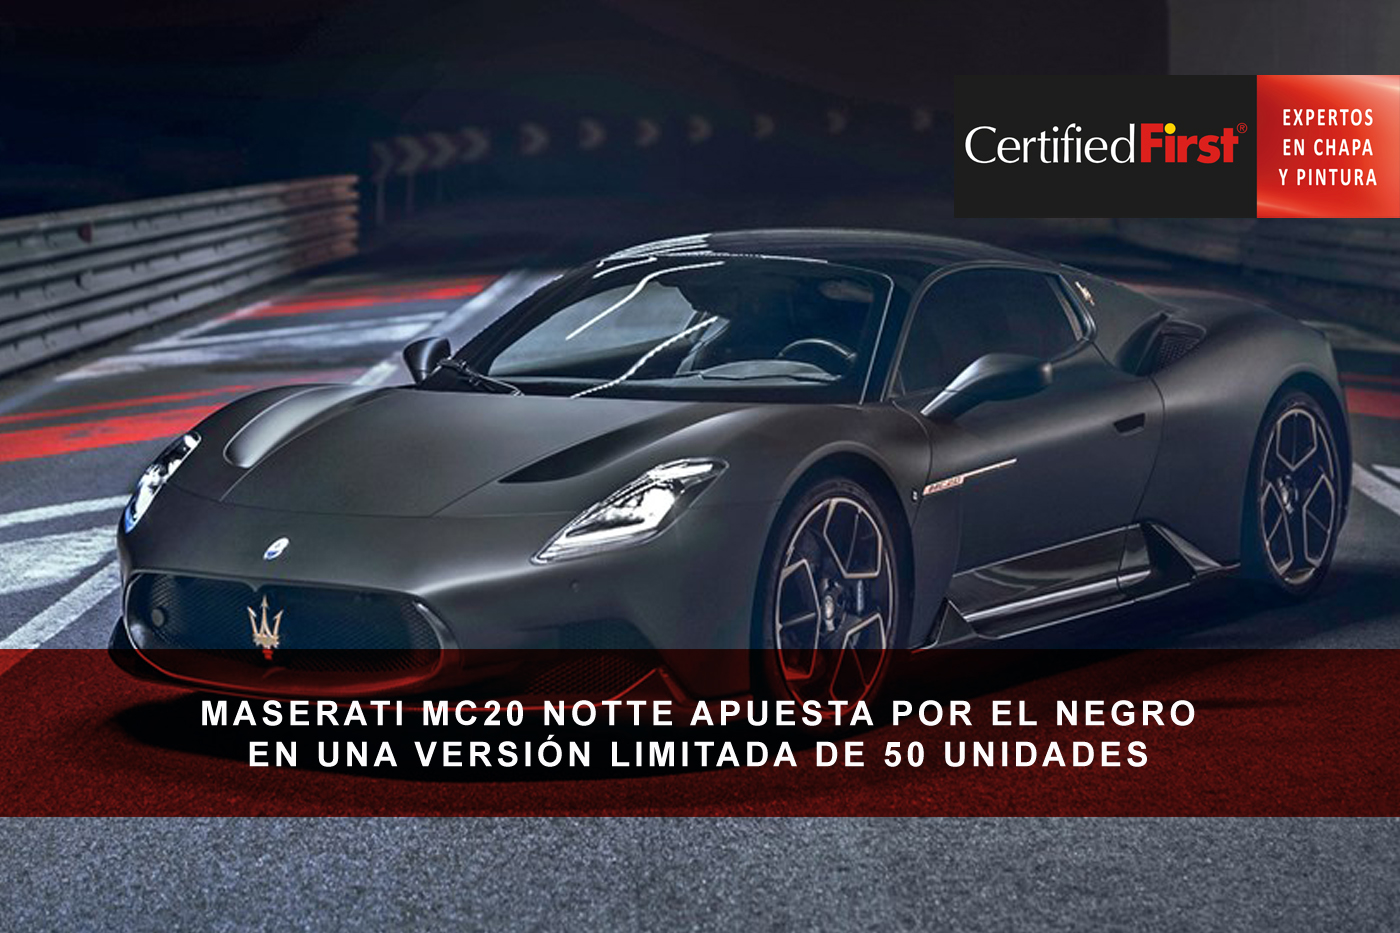 Maserati MC20 Notte apuesta por el negro en una versión limitada de 50 unidades